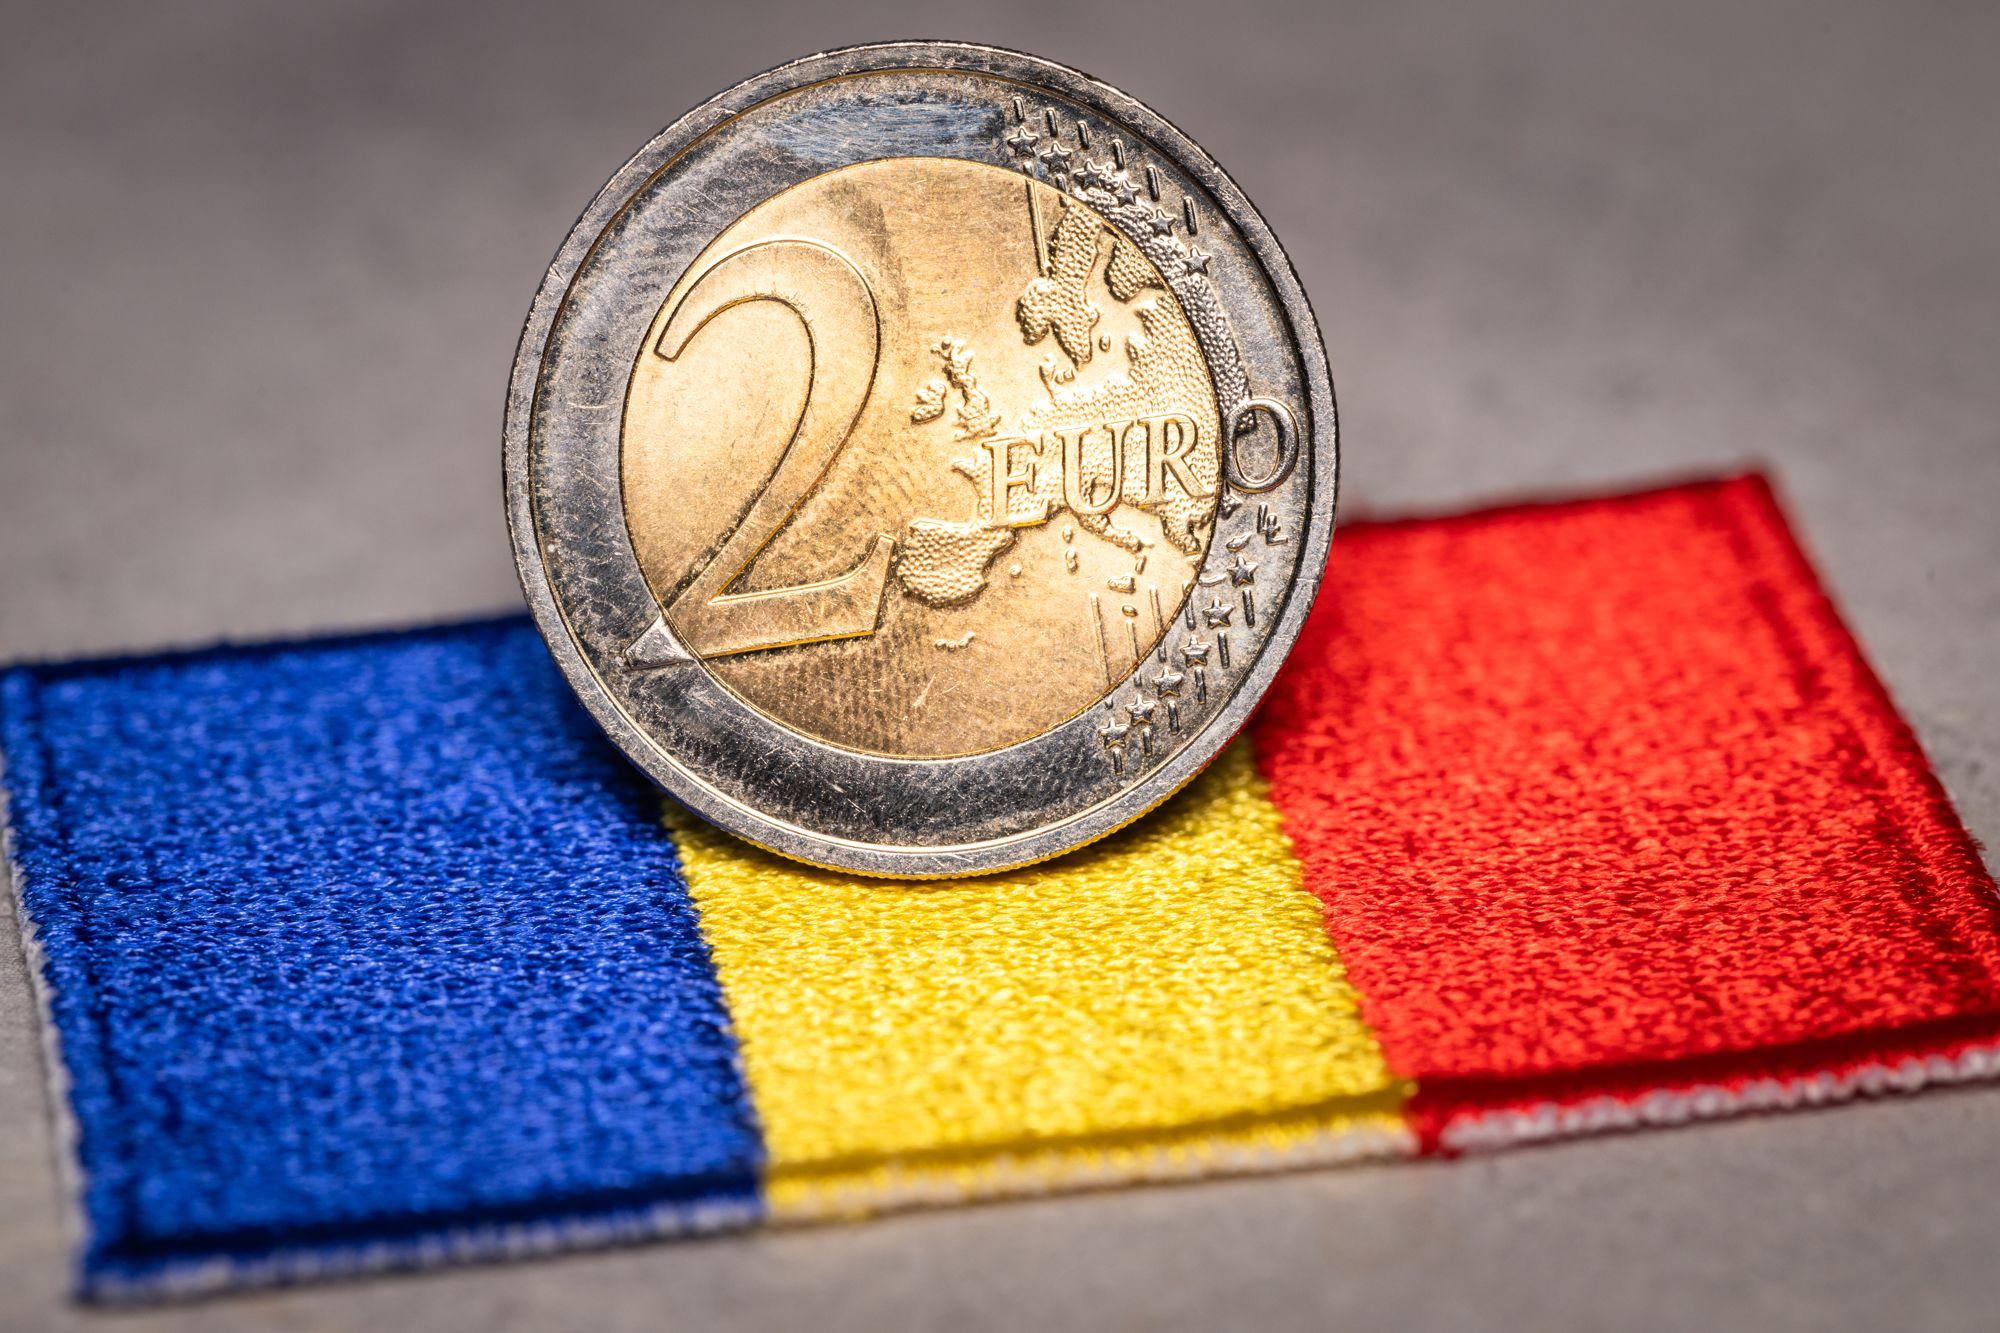 Romania, tigru economic in contextul aderarii la zona euro